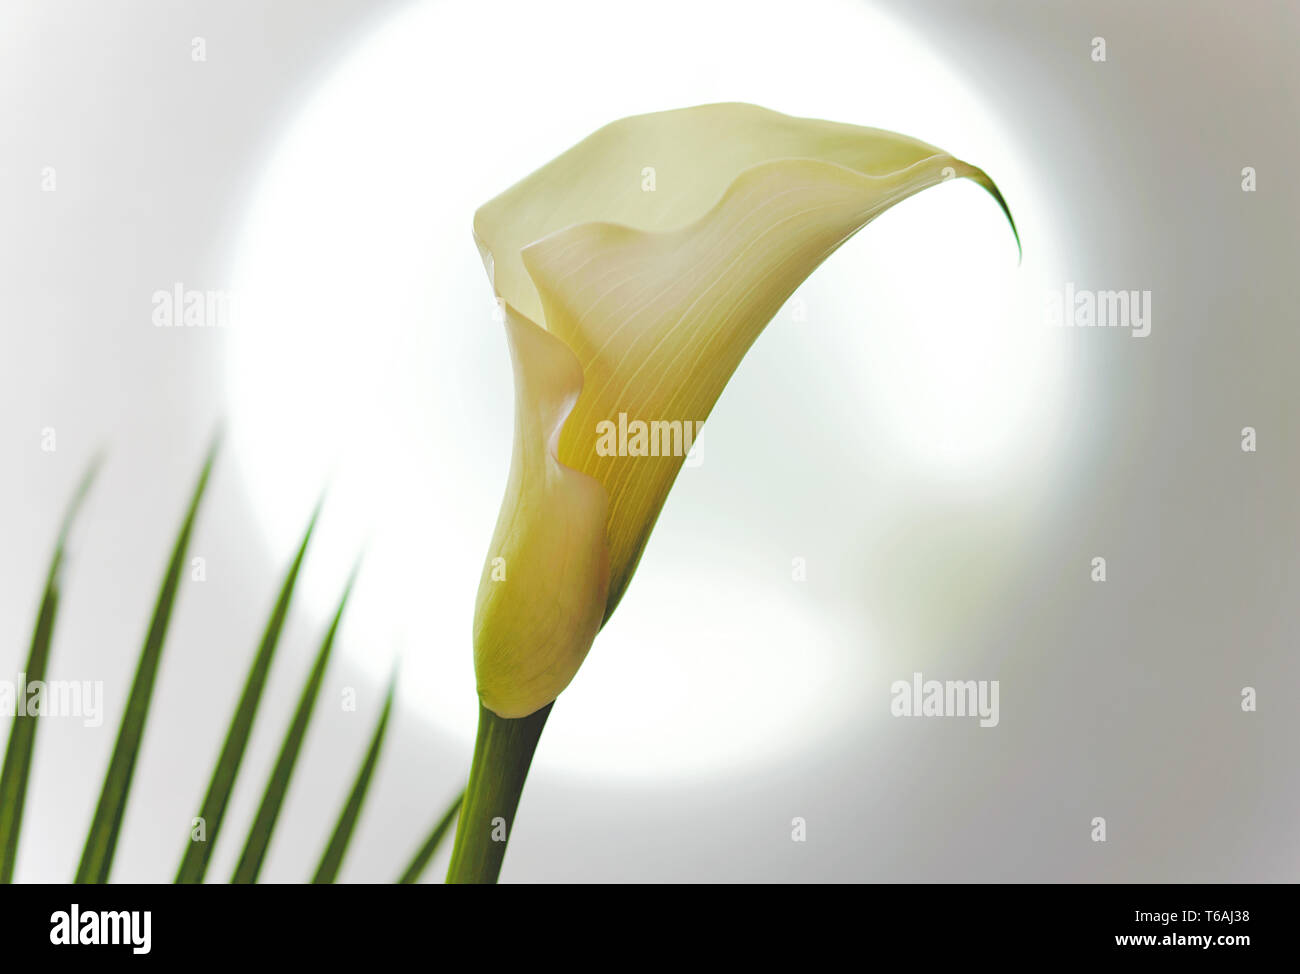 Blossom of a white calla lily (Zantedeschia) Stock Photo